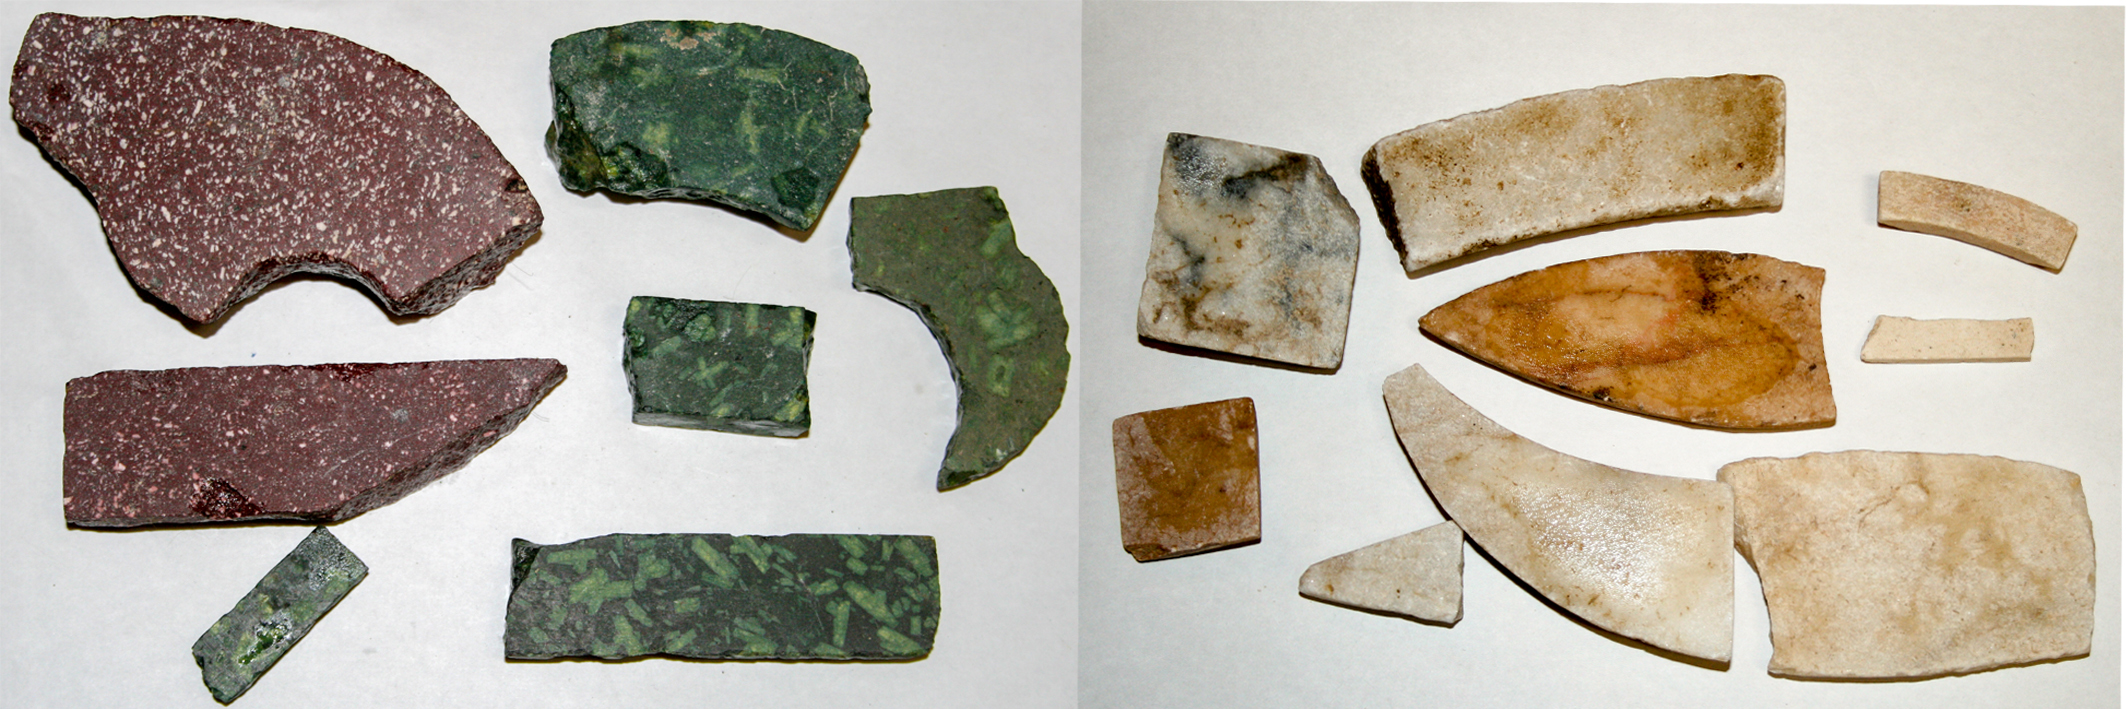 Fragmentos de marmól para la elaboración de opus sectile